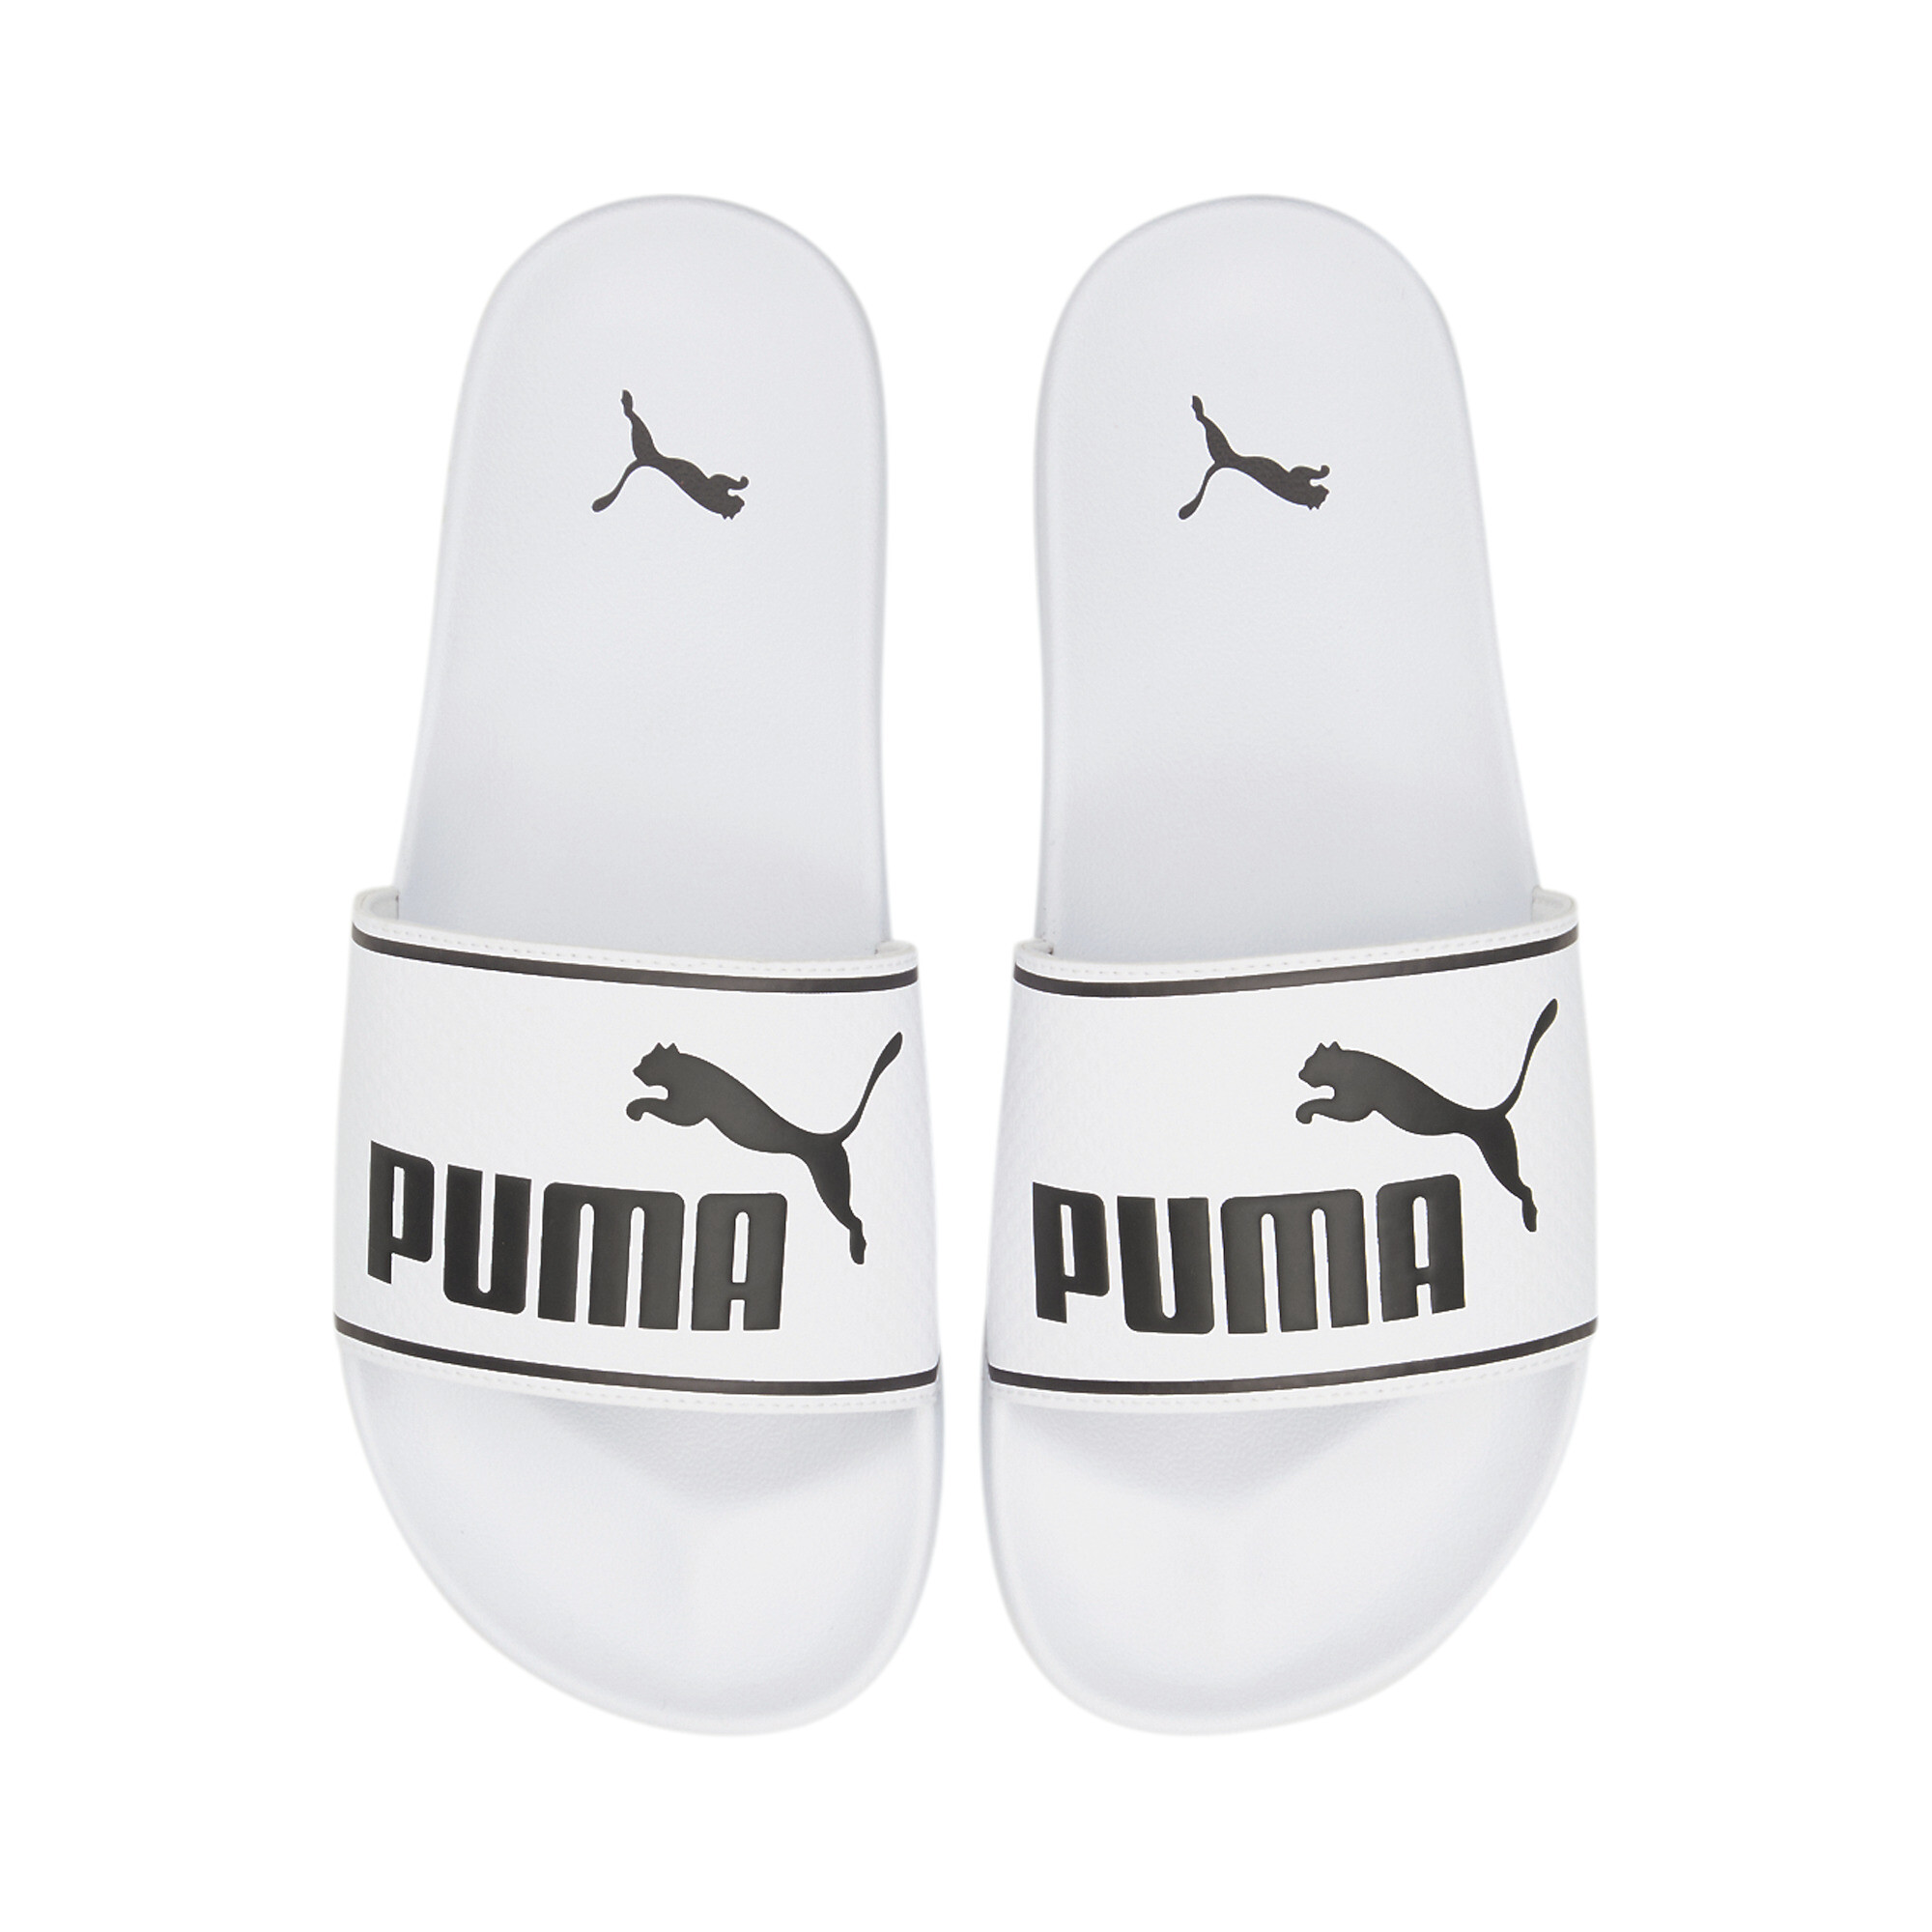 Men's PUMA Leadcat 2.0 Sandals In White, Size EU 40.5